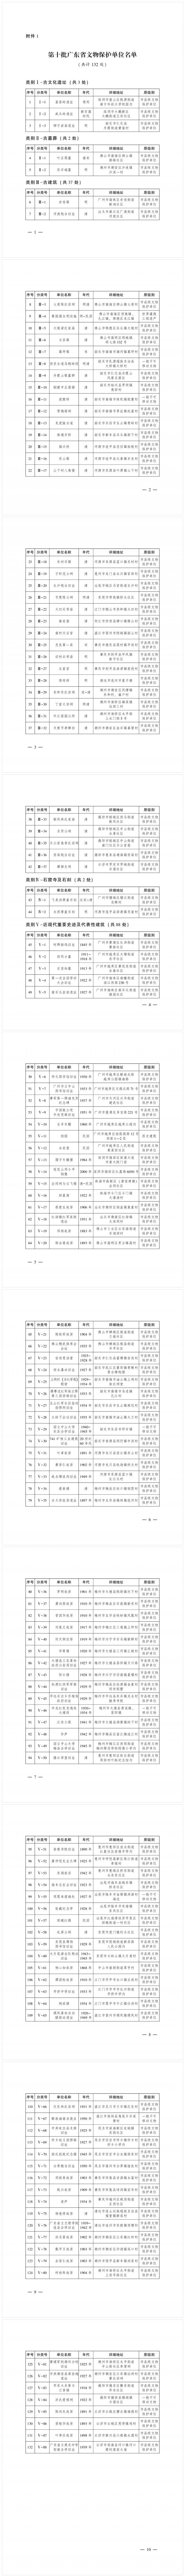 第十批廣東省文物保護單位名單公布 新一批省級文物保護單位共計132處 